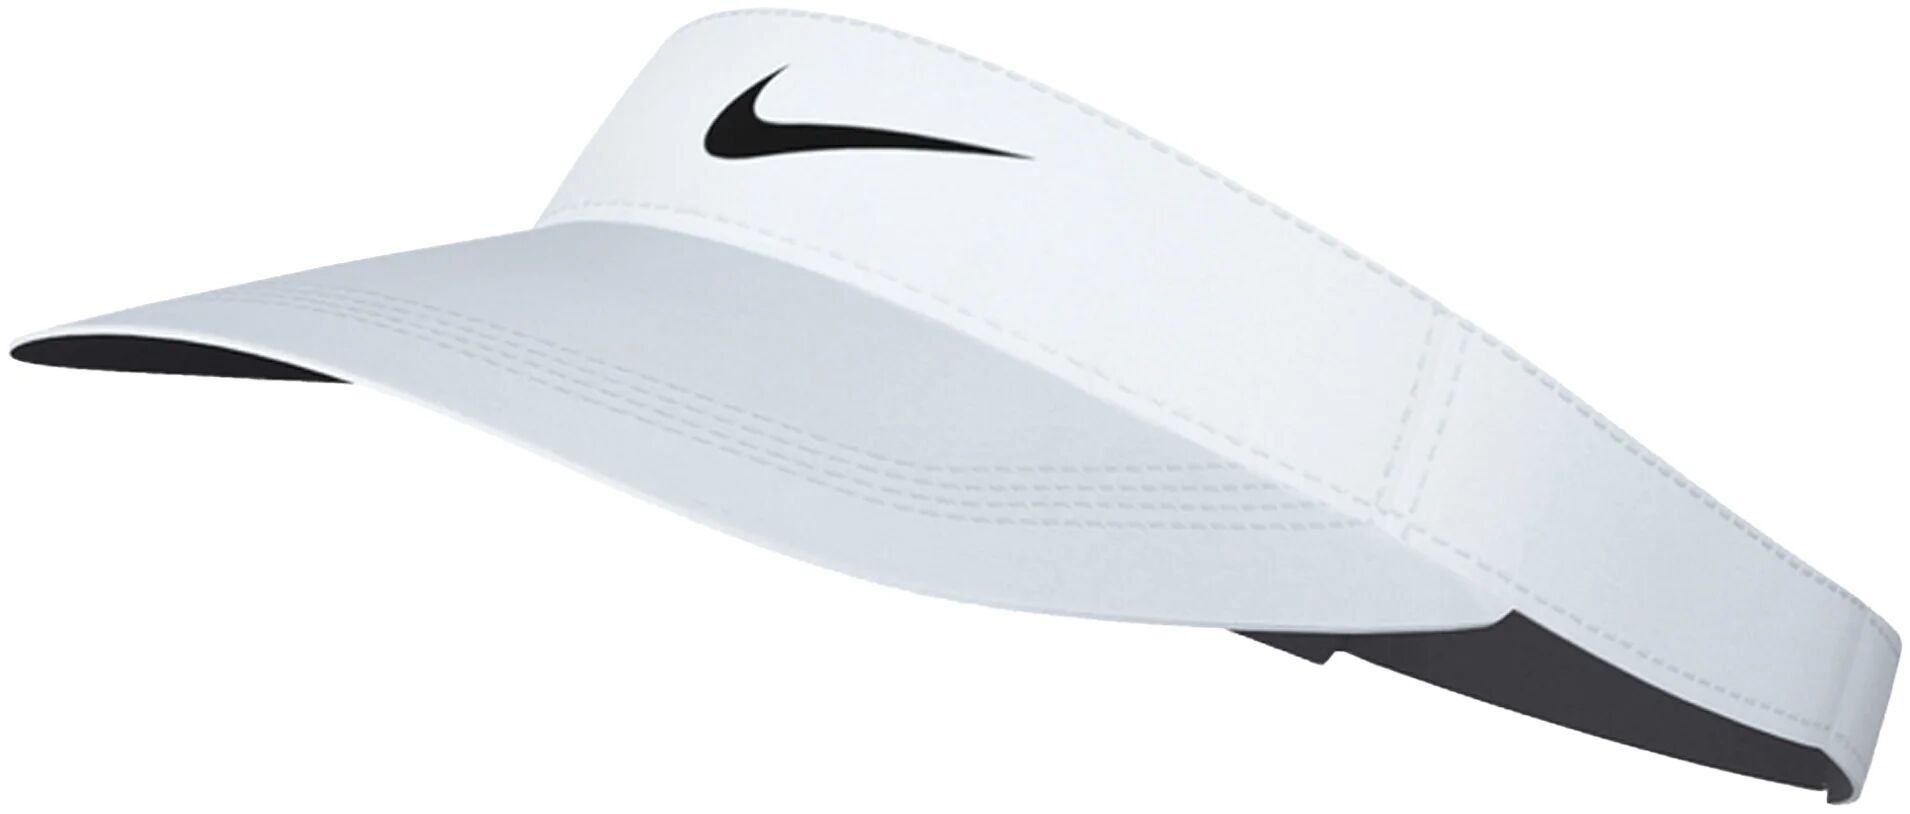 Nike Dri-FIT Ace Swoosh Men's Golf Visor - White, Size: Large/X-Large